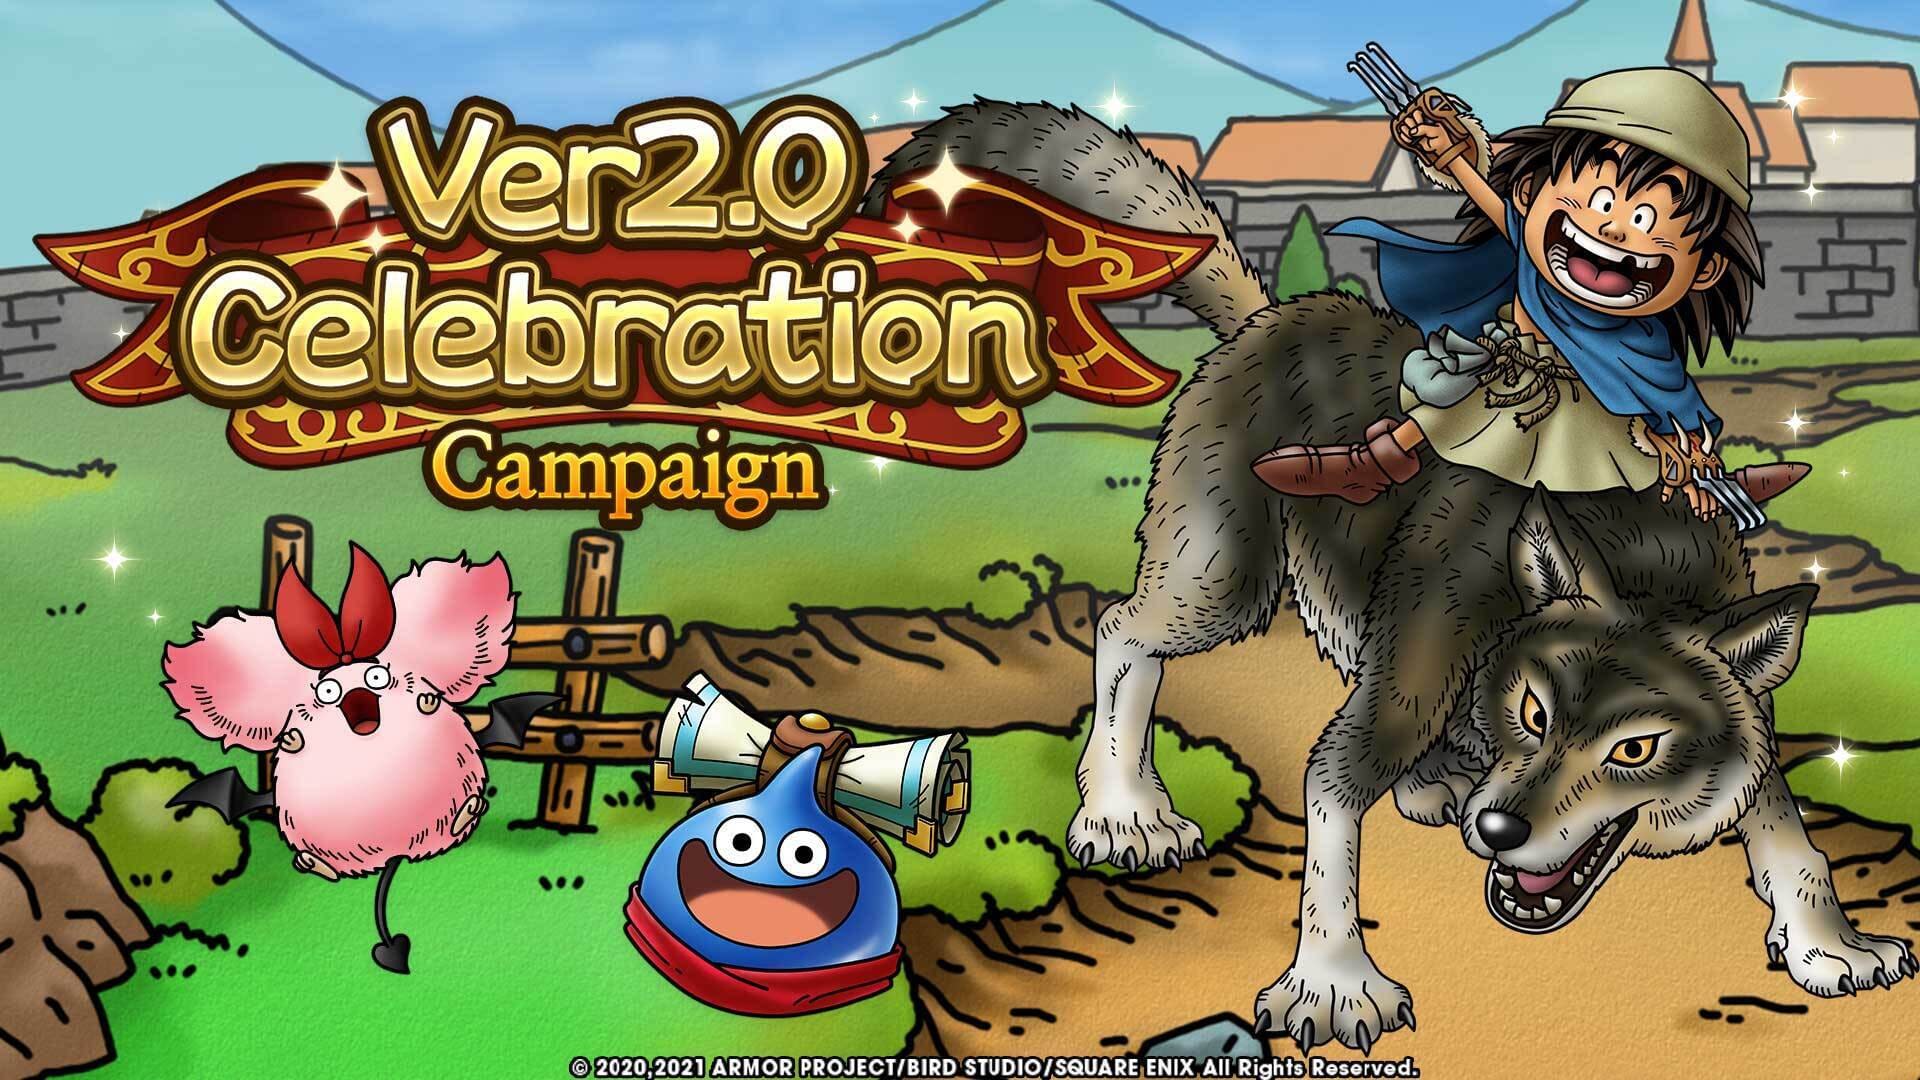 Dragon Quest Tact Announces Version 2.0 Campaign Celebration